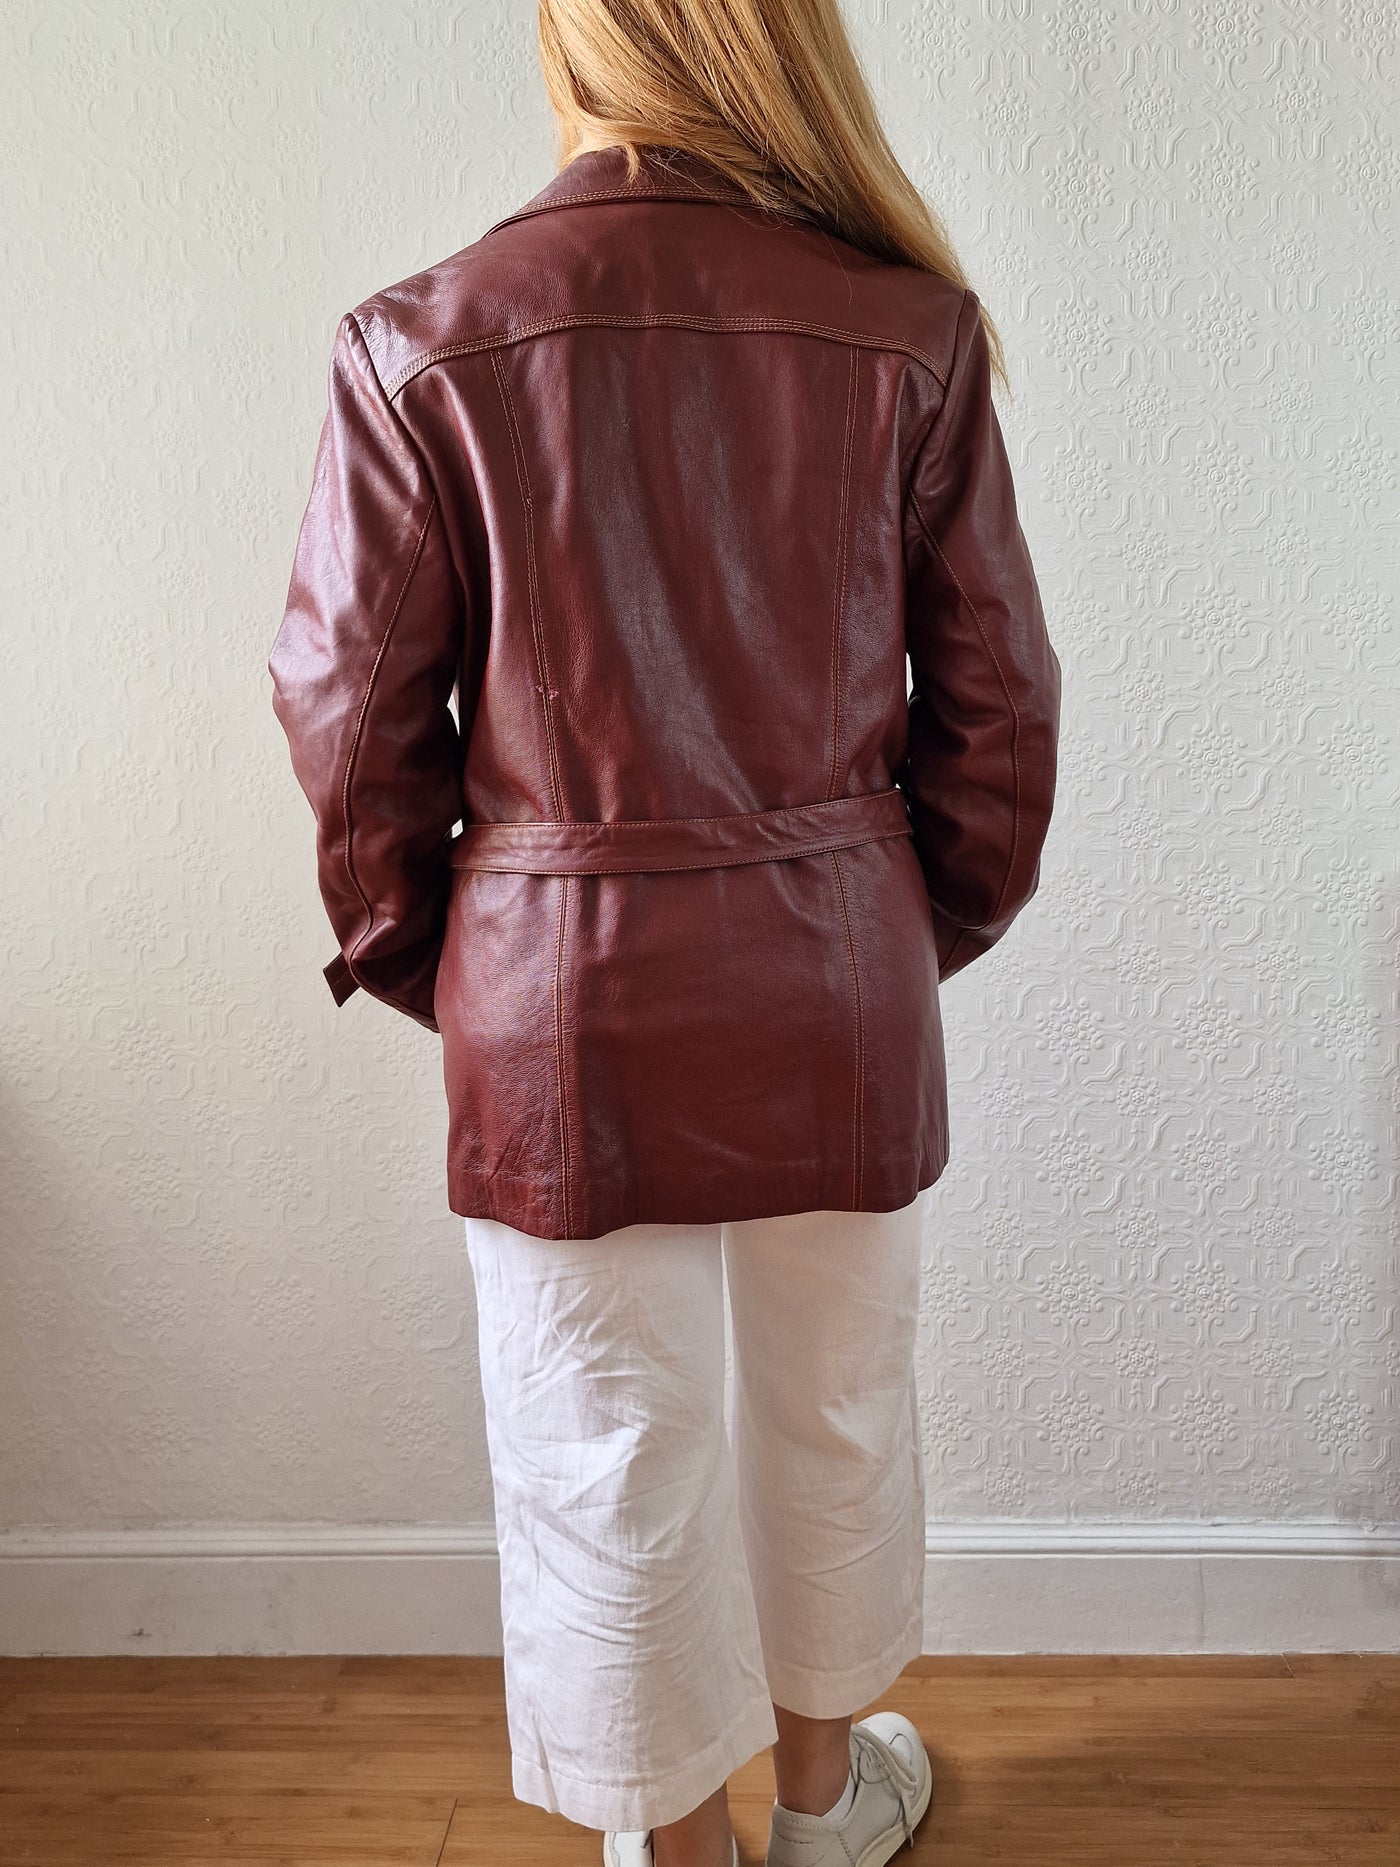 Vintage 80s Dark Cherry Red Genuine Leather Jacket with Belt - M